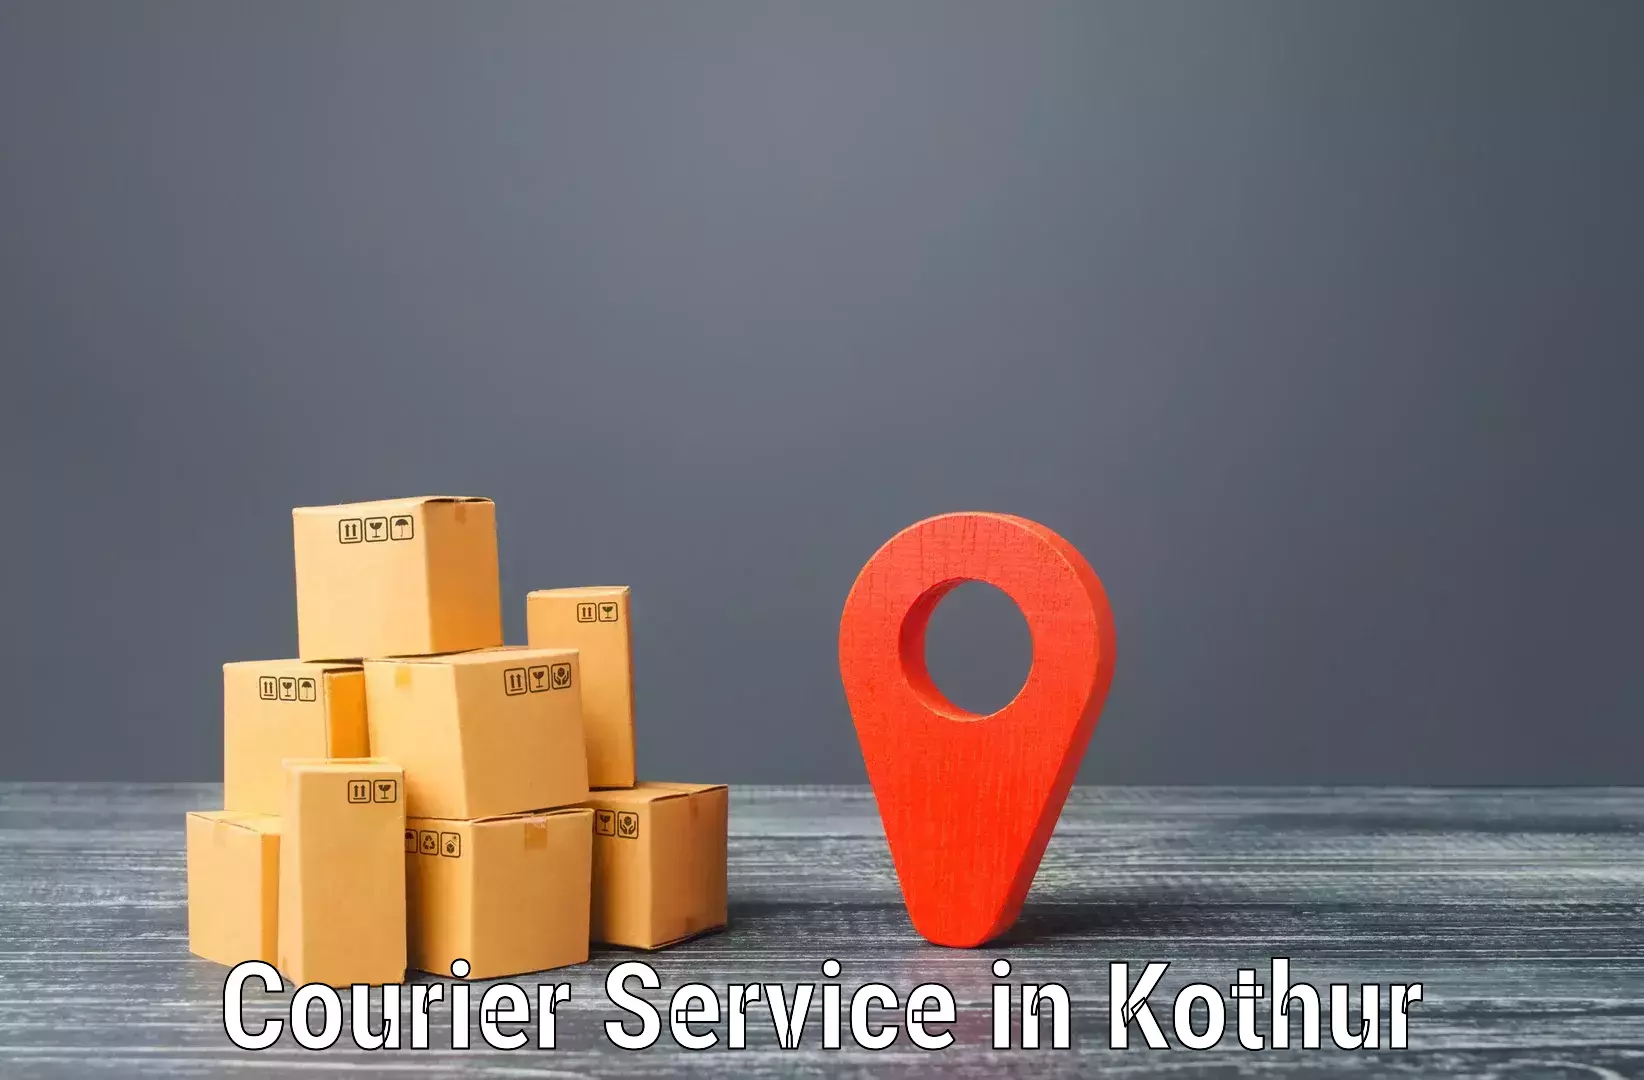 Cross-border shipping in Kothur